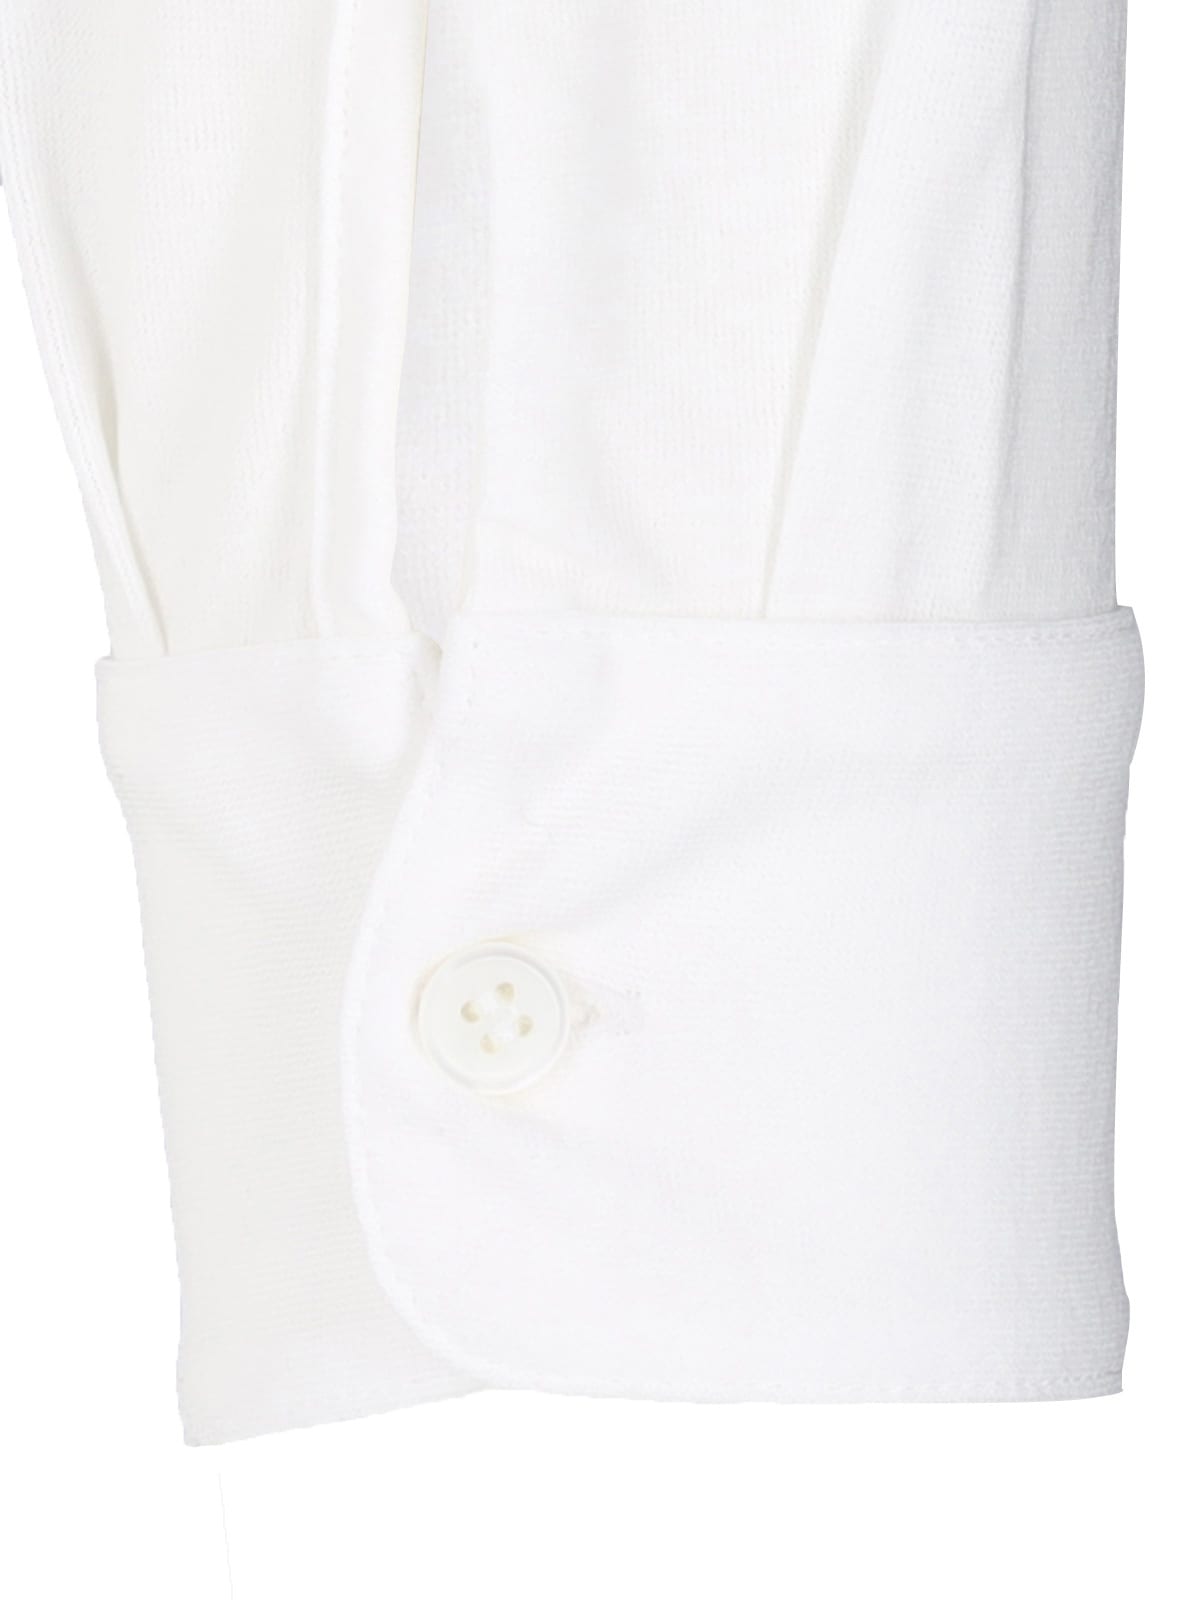 Shop Zanone Basic Shirt In White